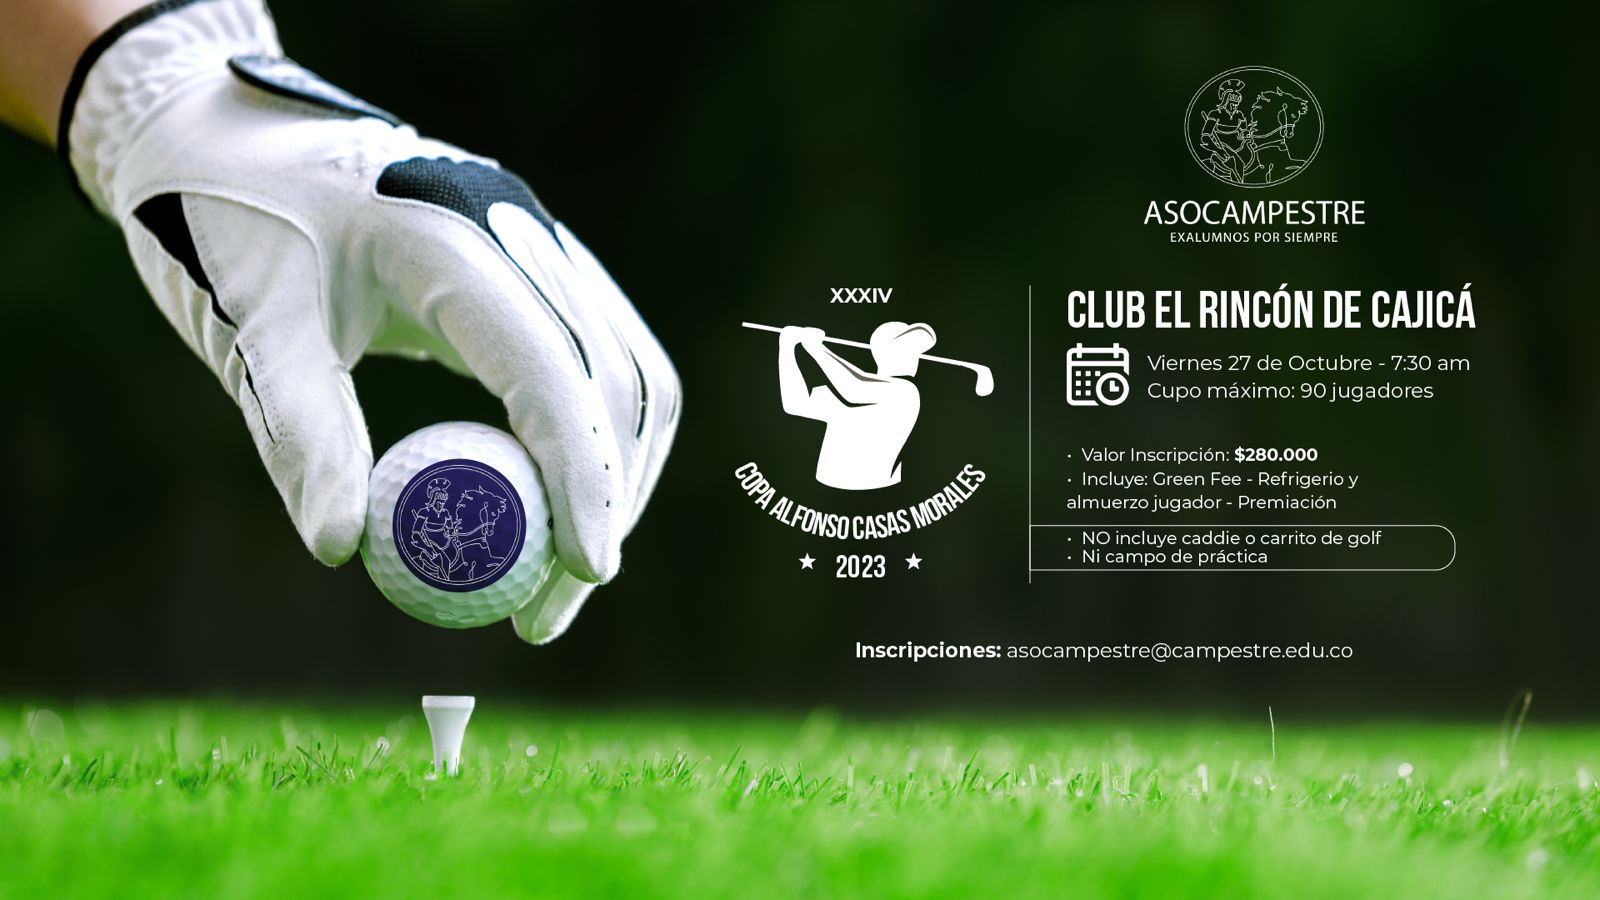 Torneo de Golf Copa Alfonso Casas Morales XXXIV